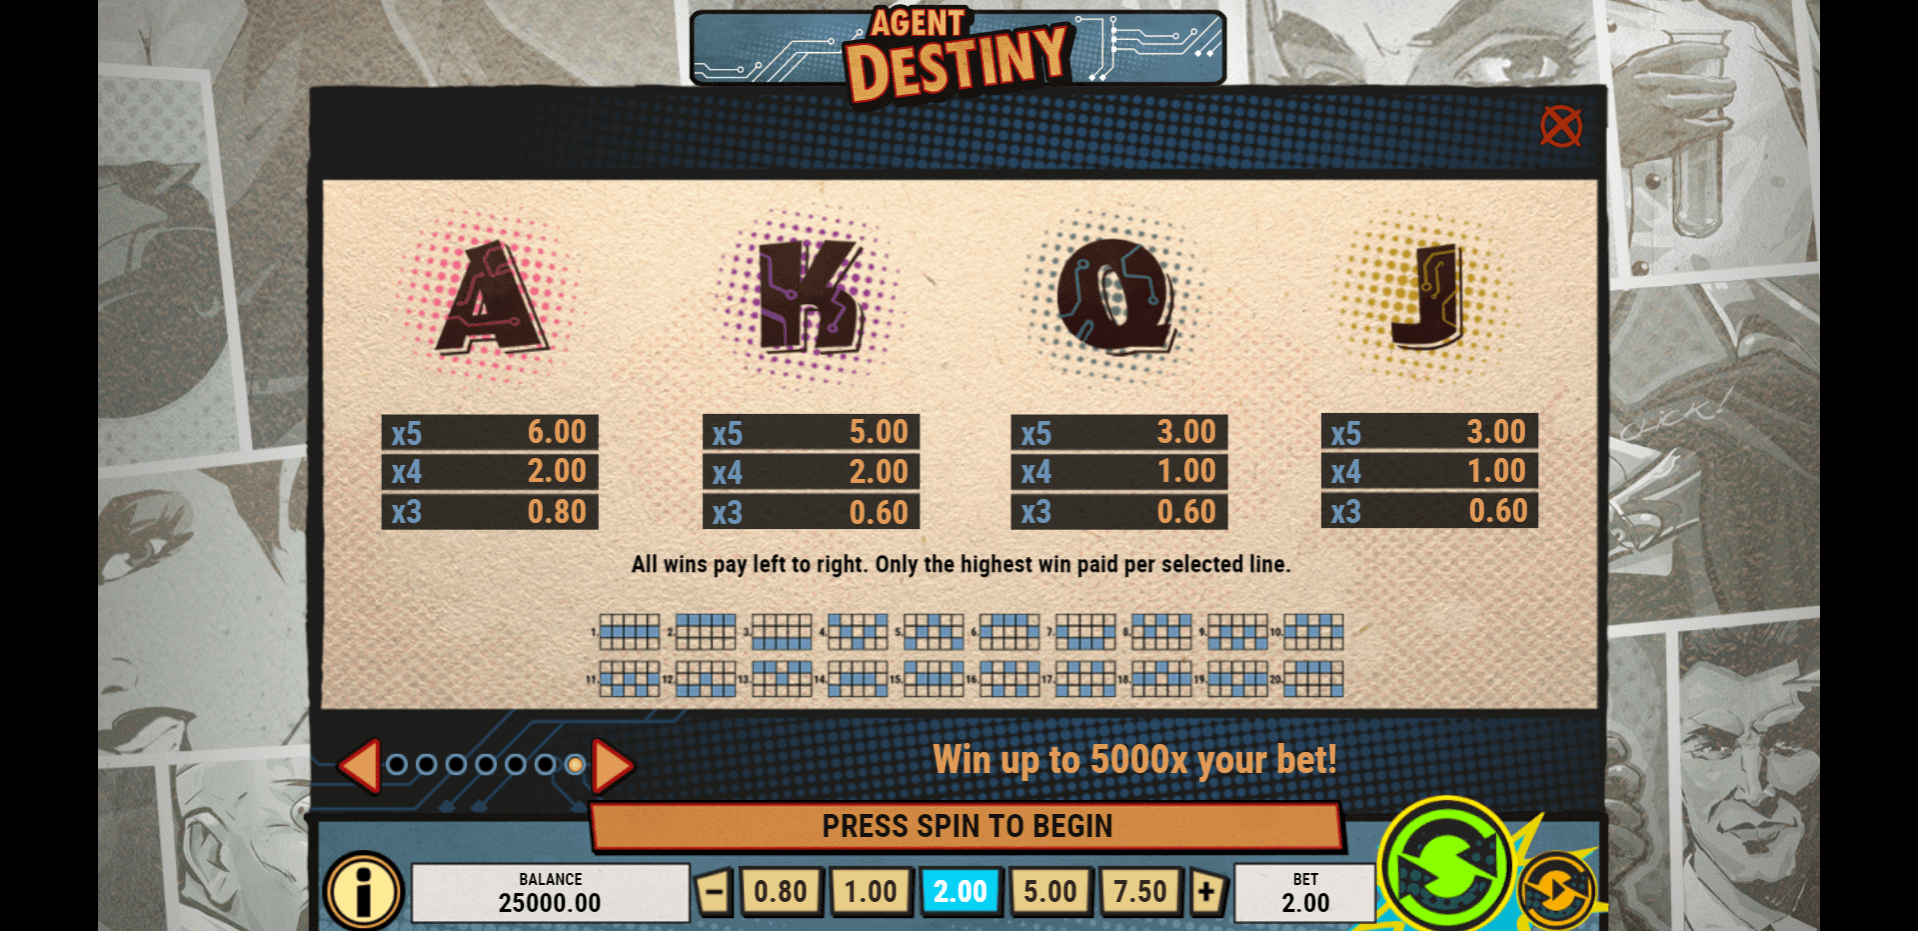 agent destiny slot machine detail image 6